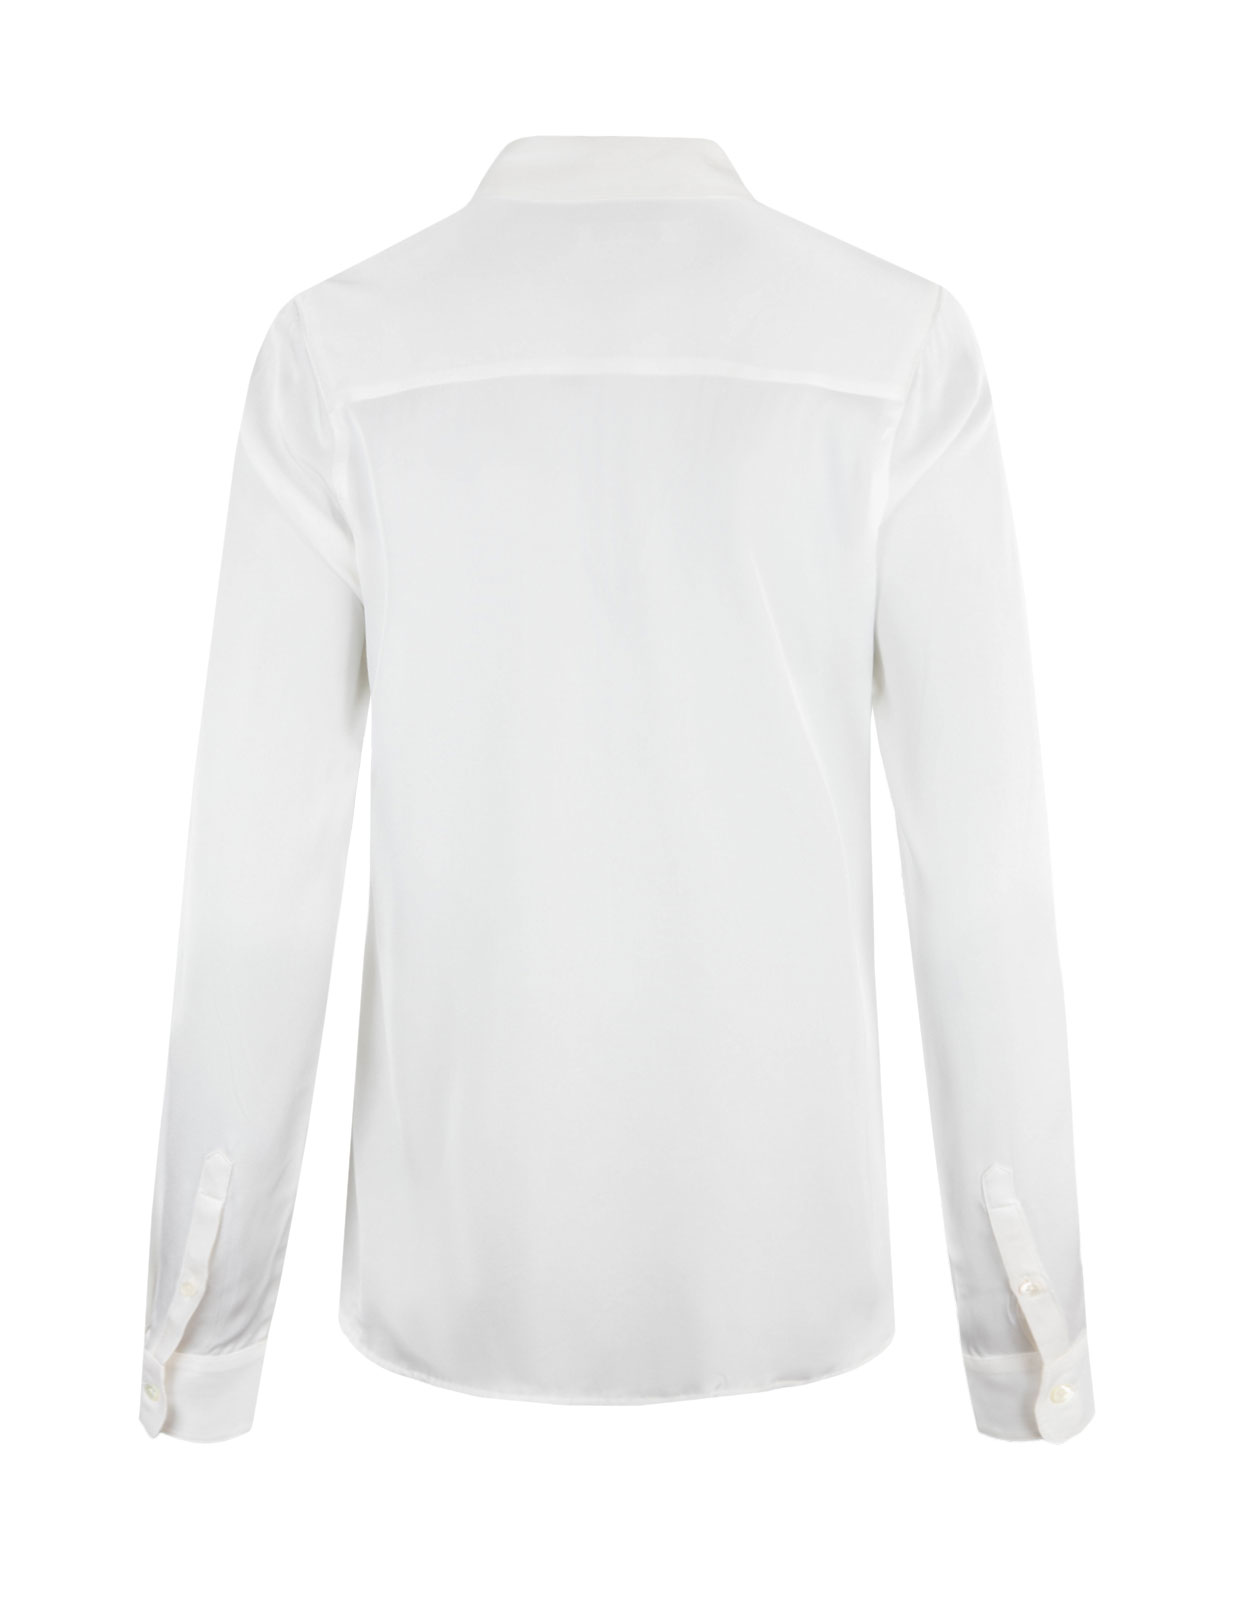 Susan Silk Shirt Offwhite Stl 36